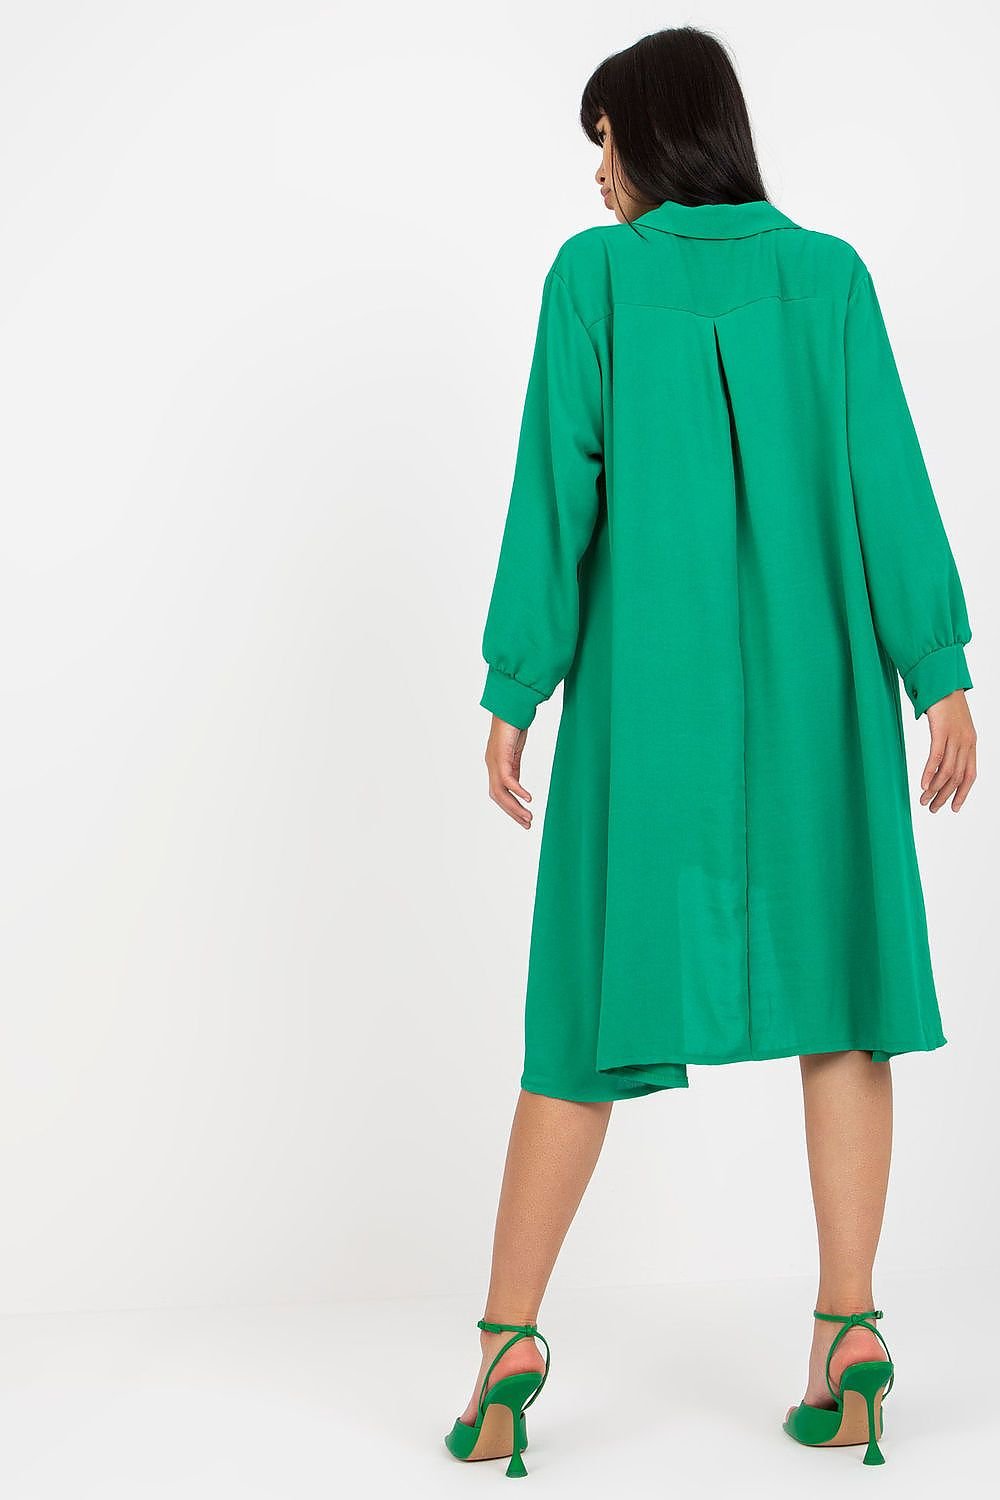 TEEK - Green Button Down Shirt Dress DRESS TEEK MH   